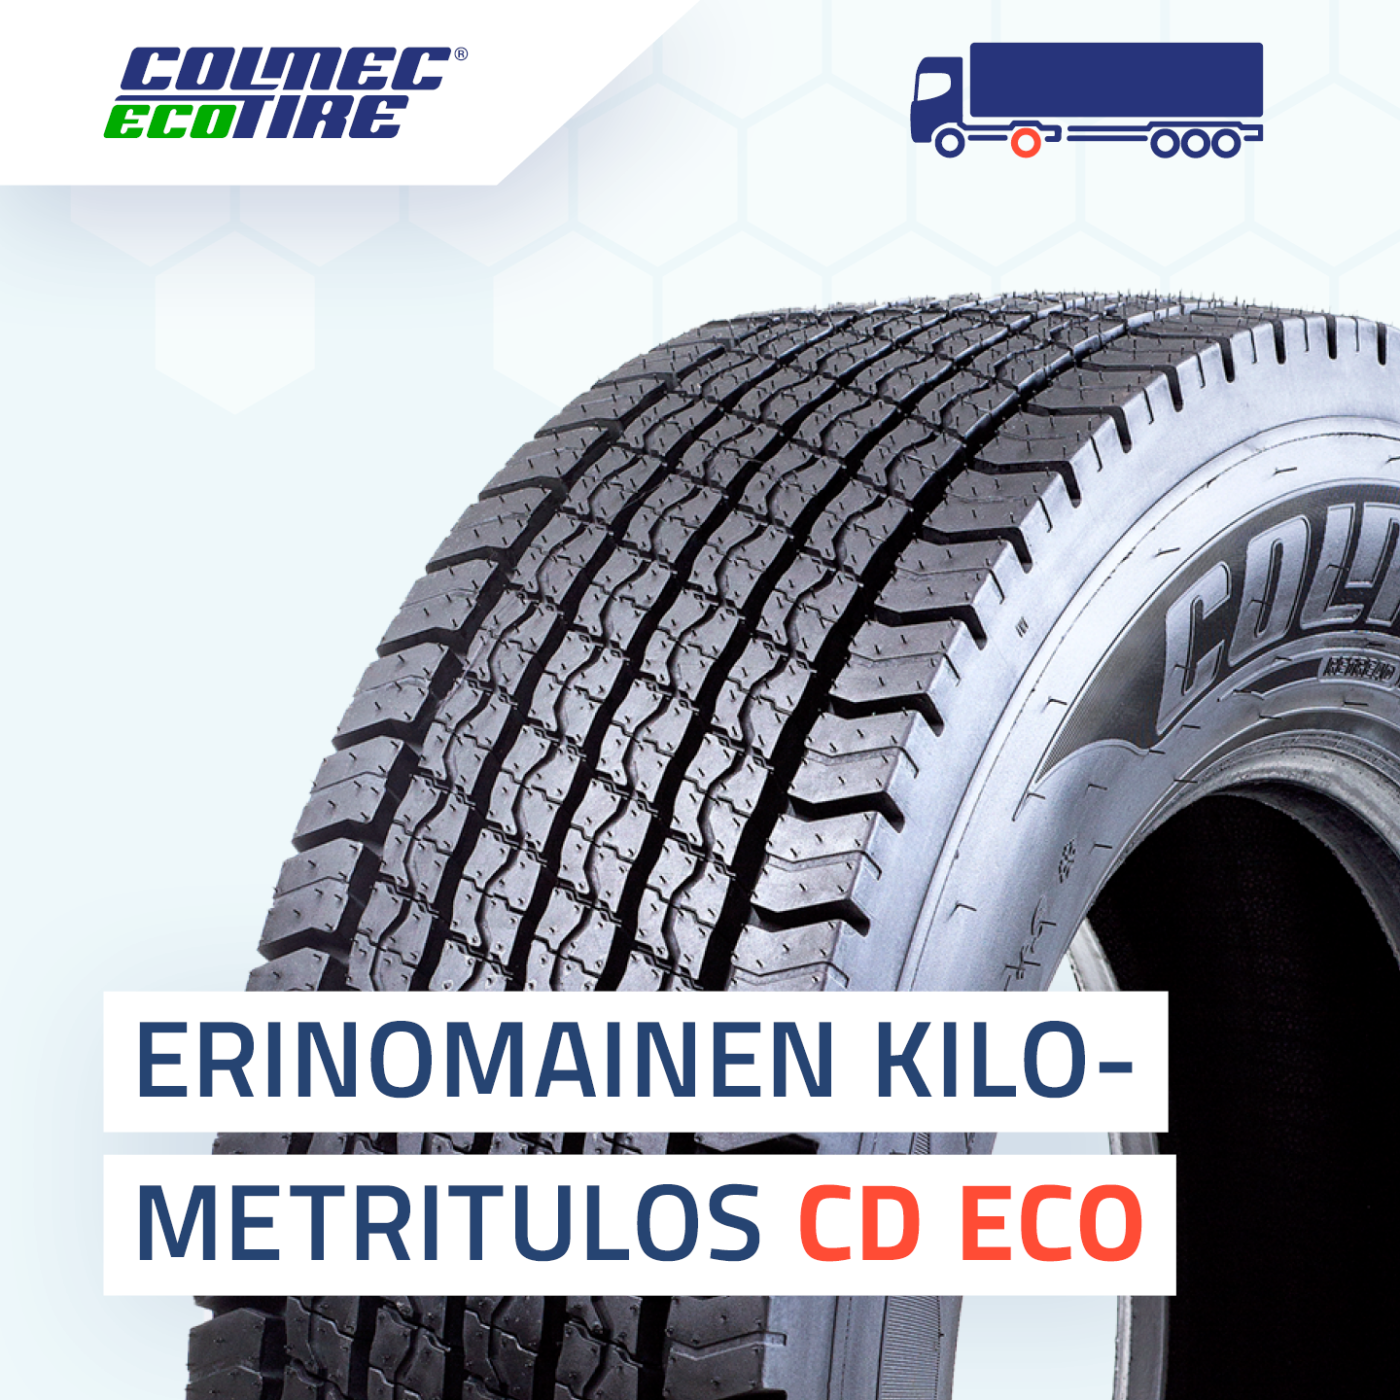 Colmec EcoTire CD ECO